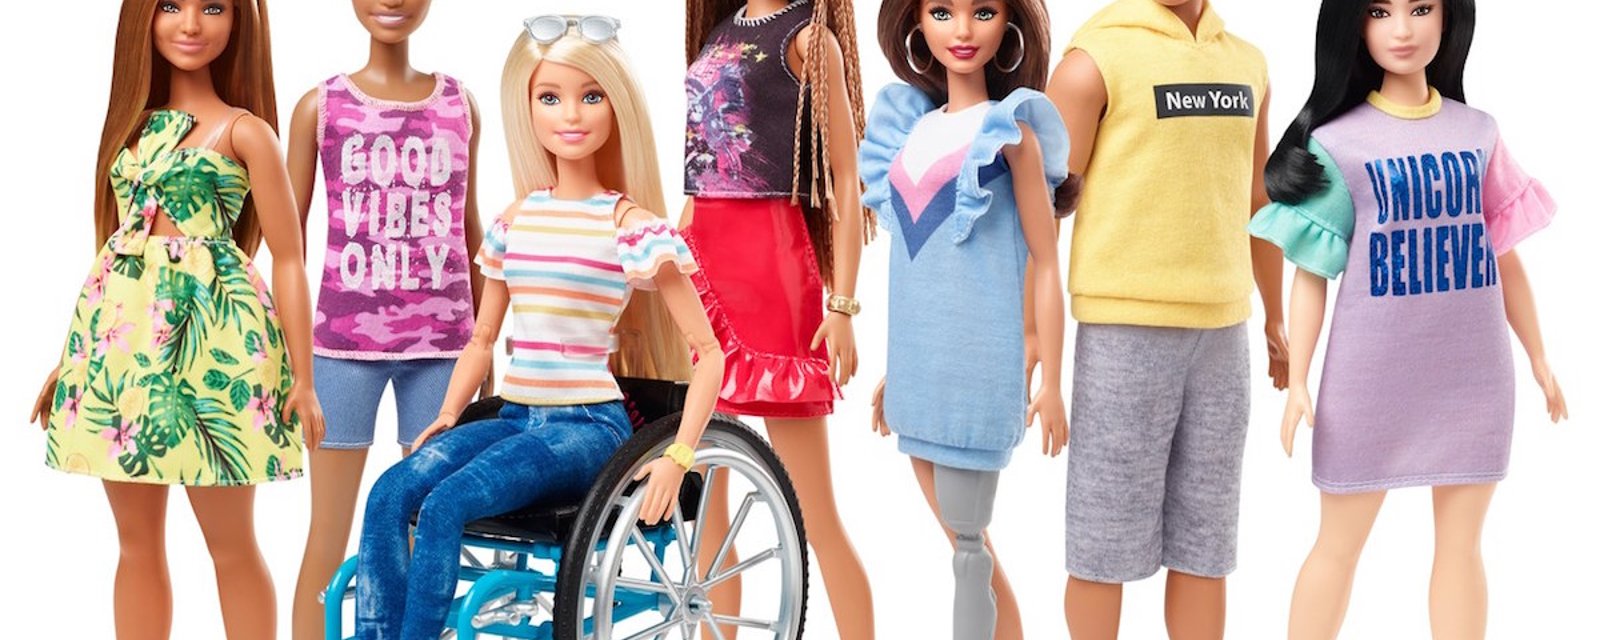 Barbie a maintenant un fauteuil roulant ou une prothèse